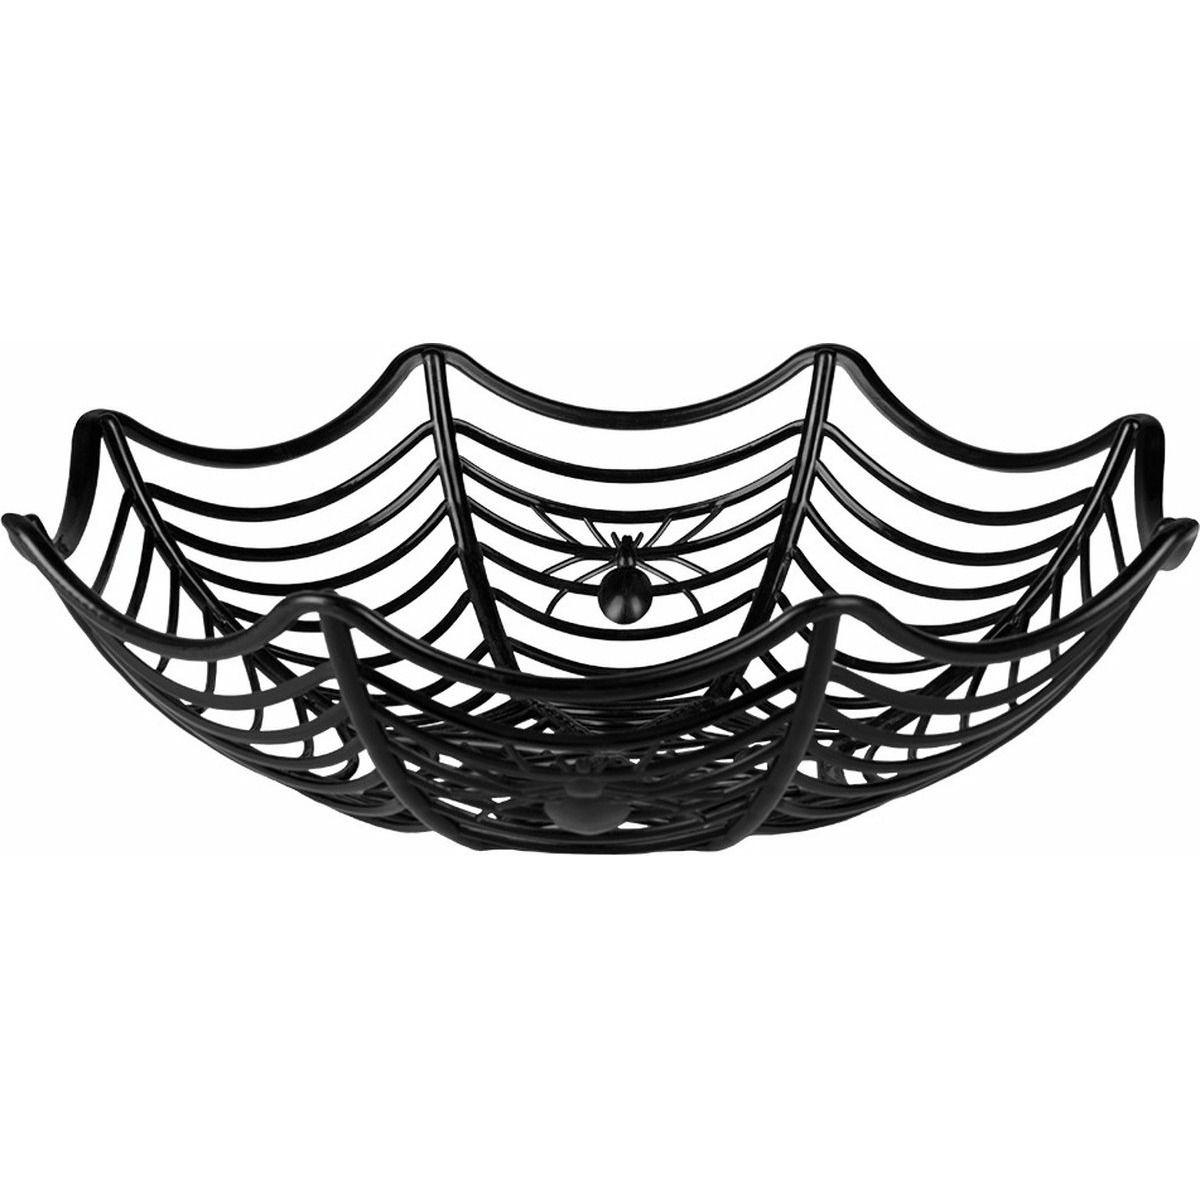 Zwarte spinnenweb snoep schaal 27 cm